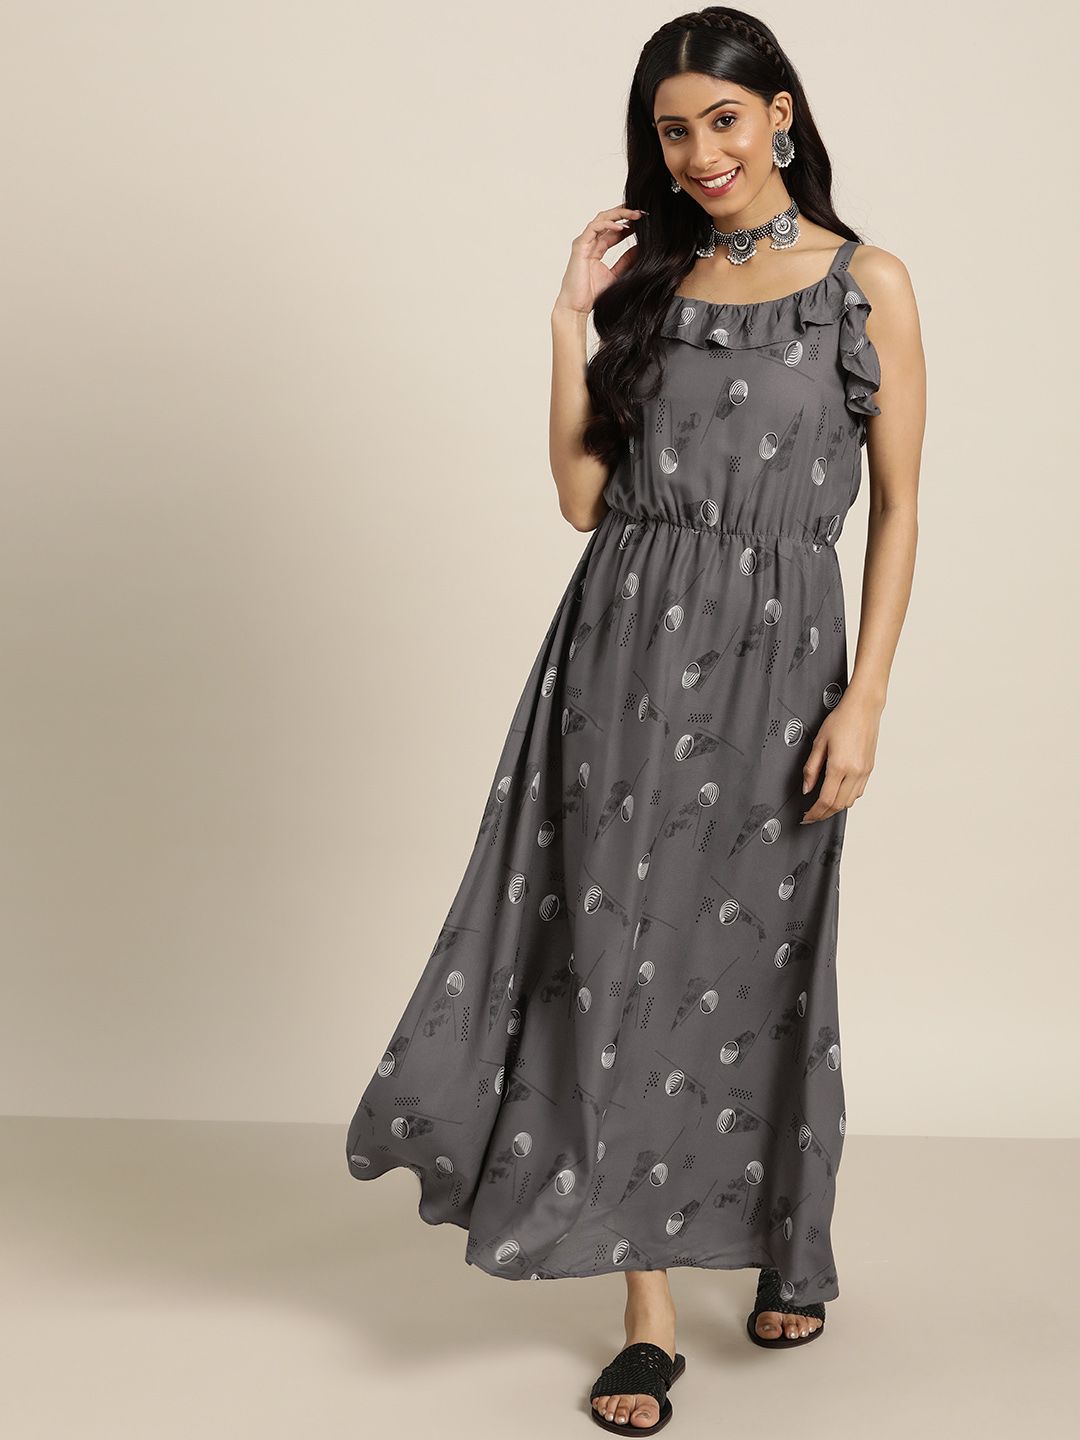 Sangria Women Grey & White Printed Maxi Dress Price in India